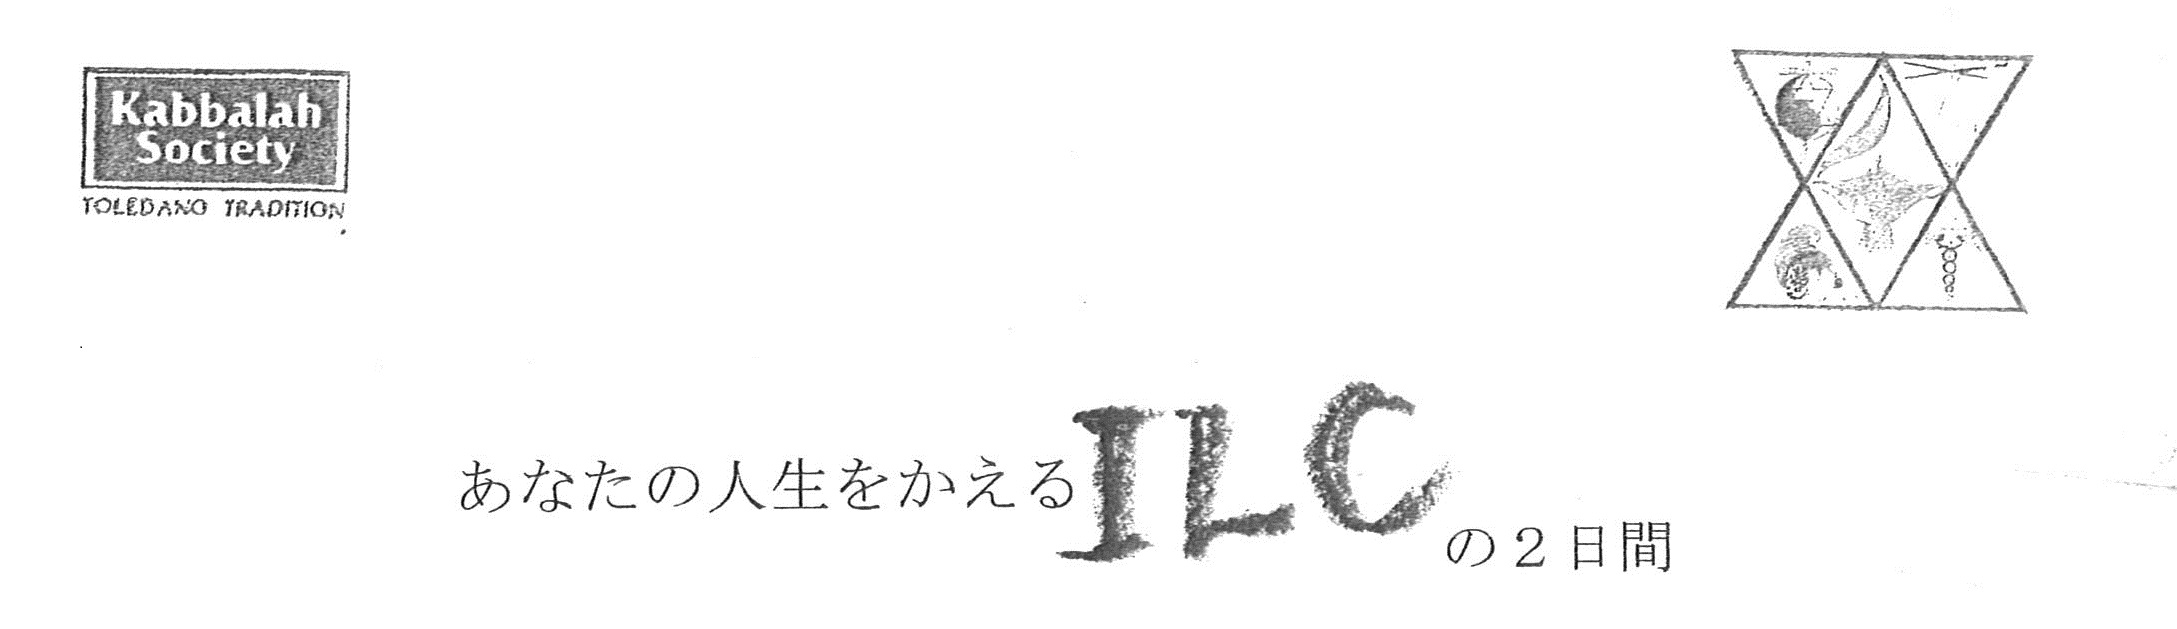 okinawa_ILC_title